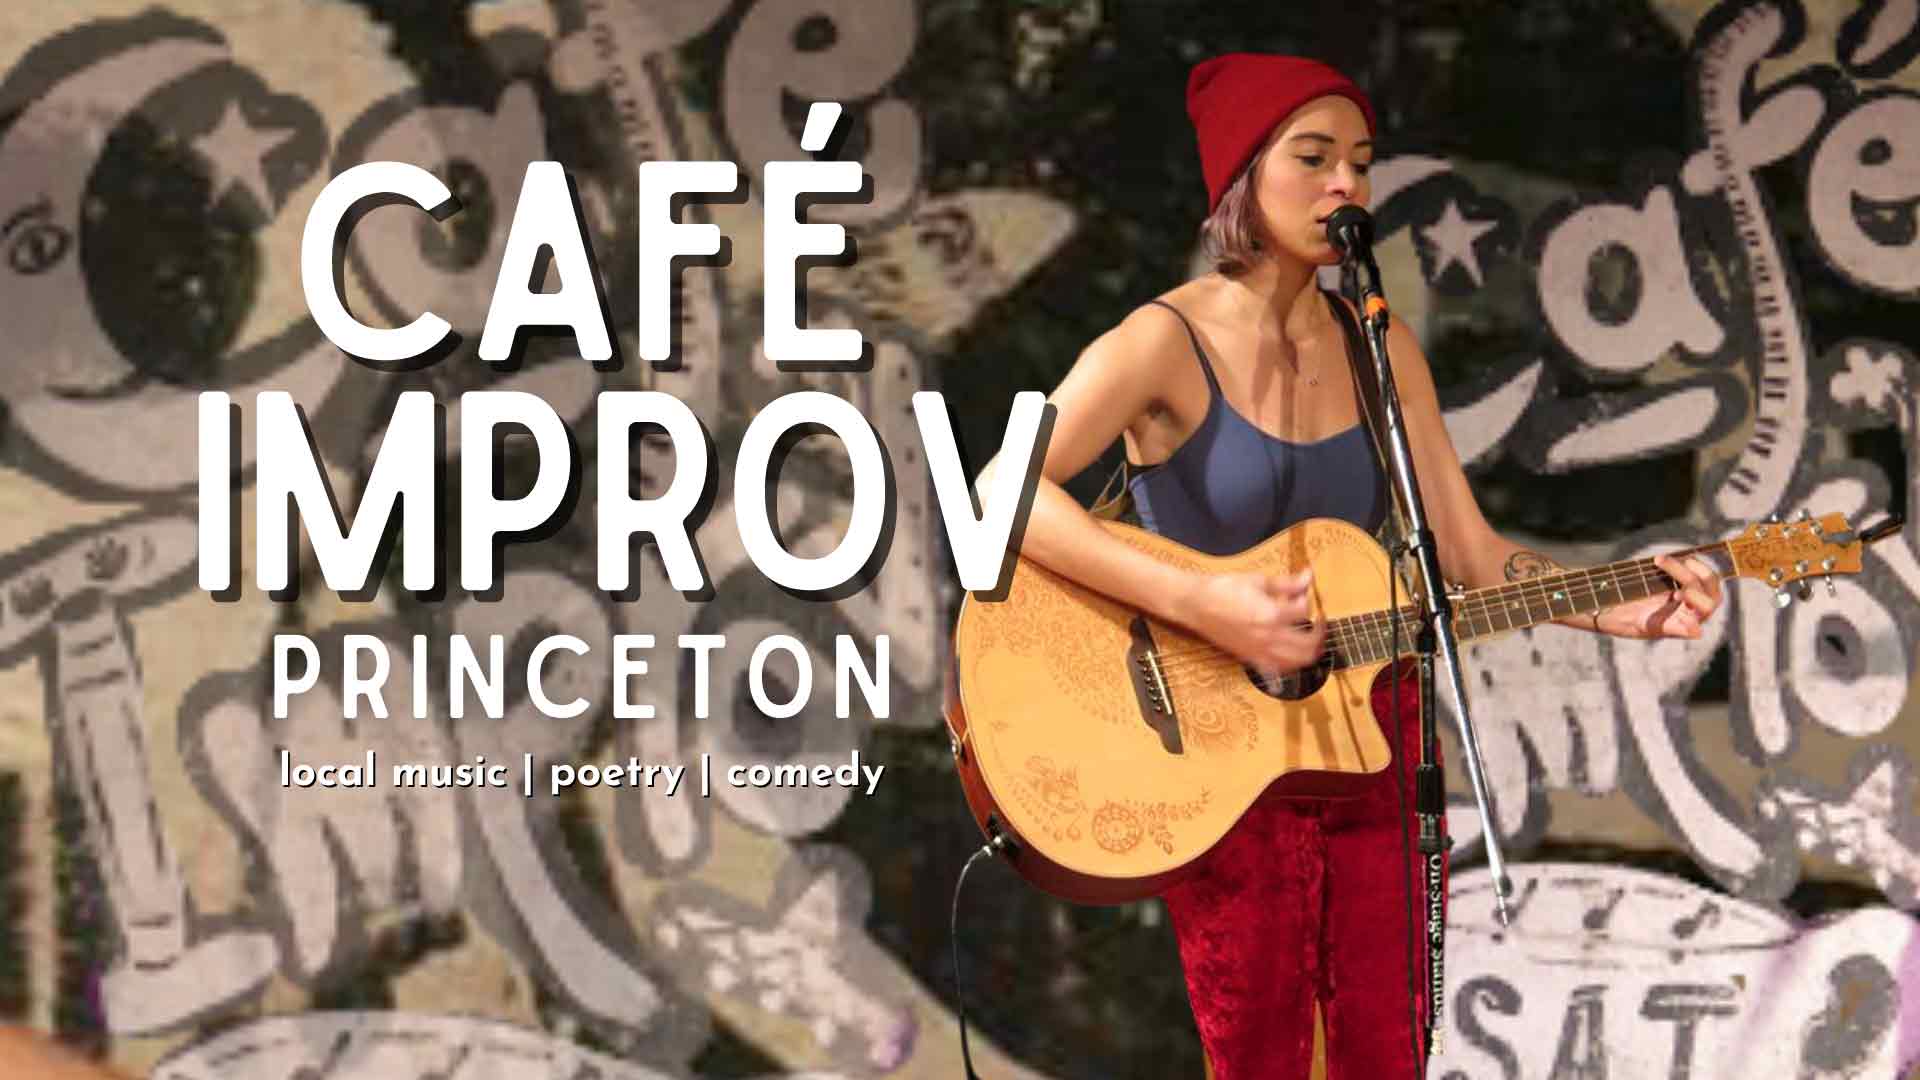 Café Improv Princeton: Local music, poetry and comedy